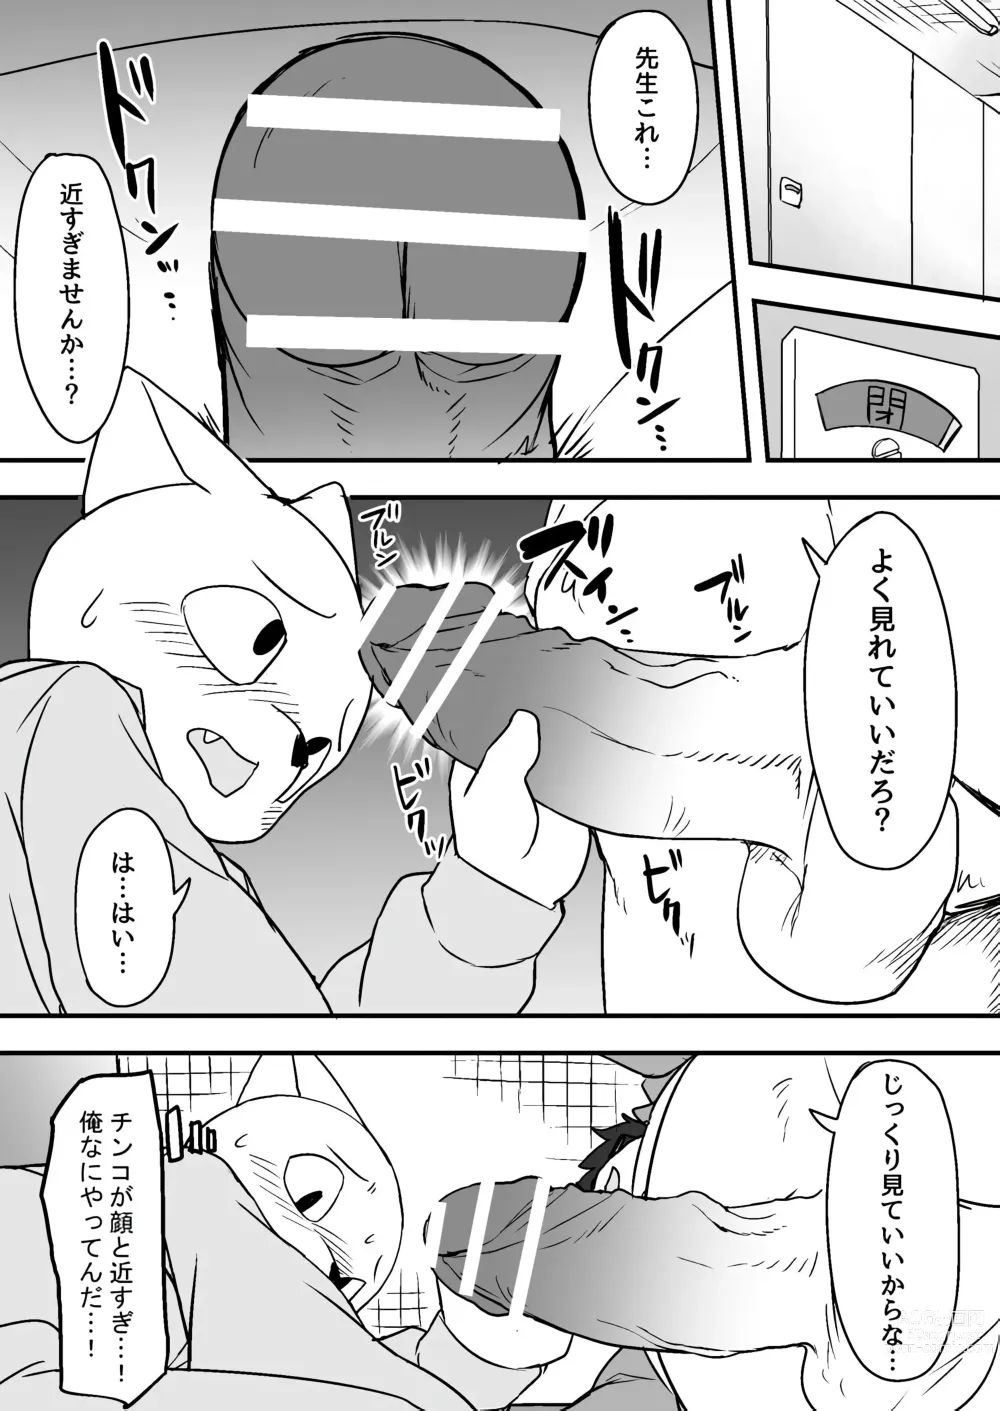 Page 6 of doujinshi Manmosu Marimo - Sensei Story #1